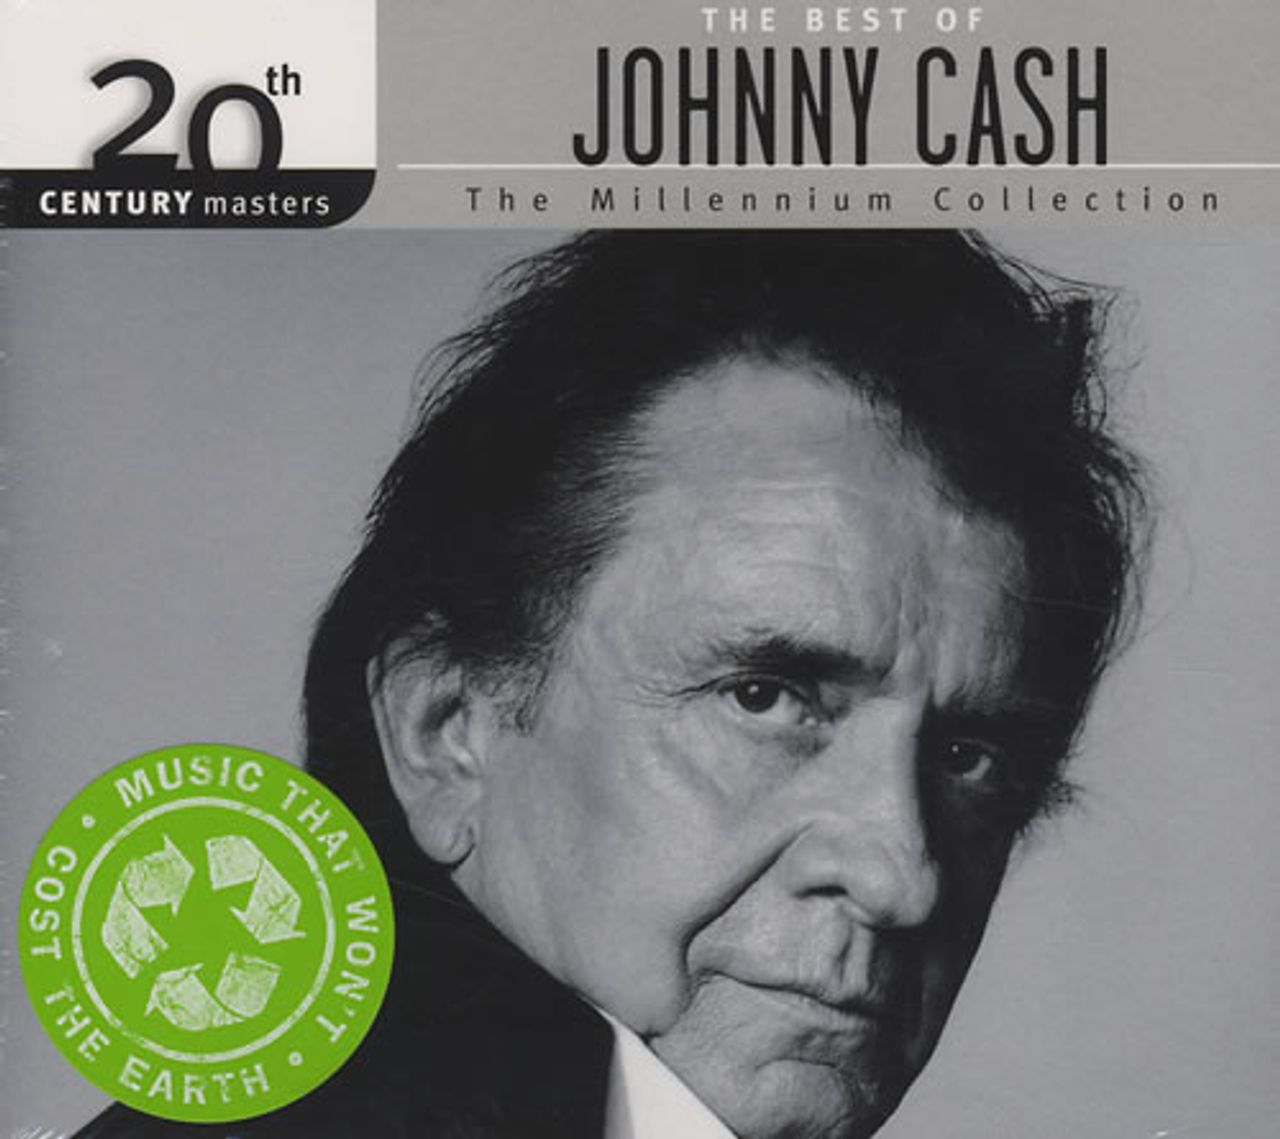 Johnny Cash The Best Of Johnny Cash: The Millennium Collection Australian CD album (CDLP) 1707844